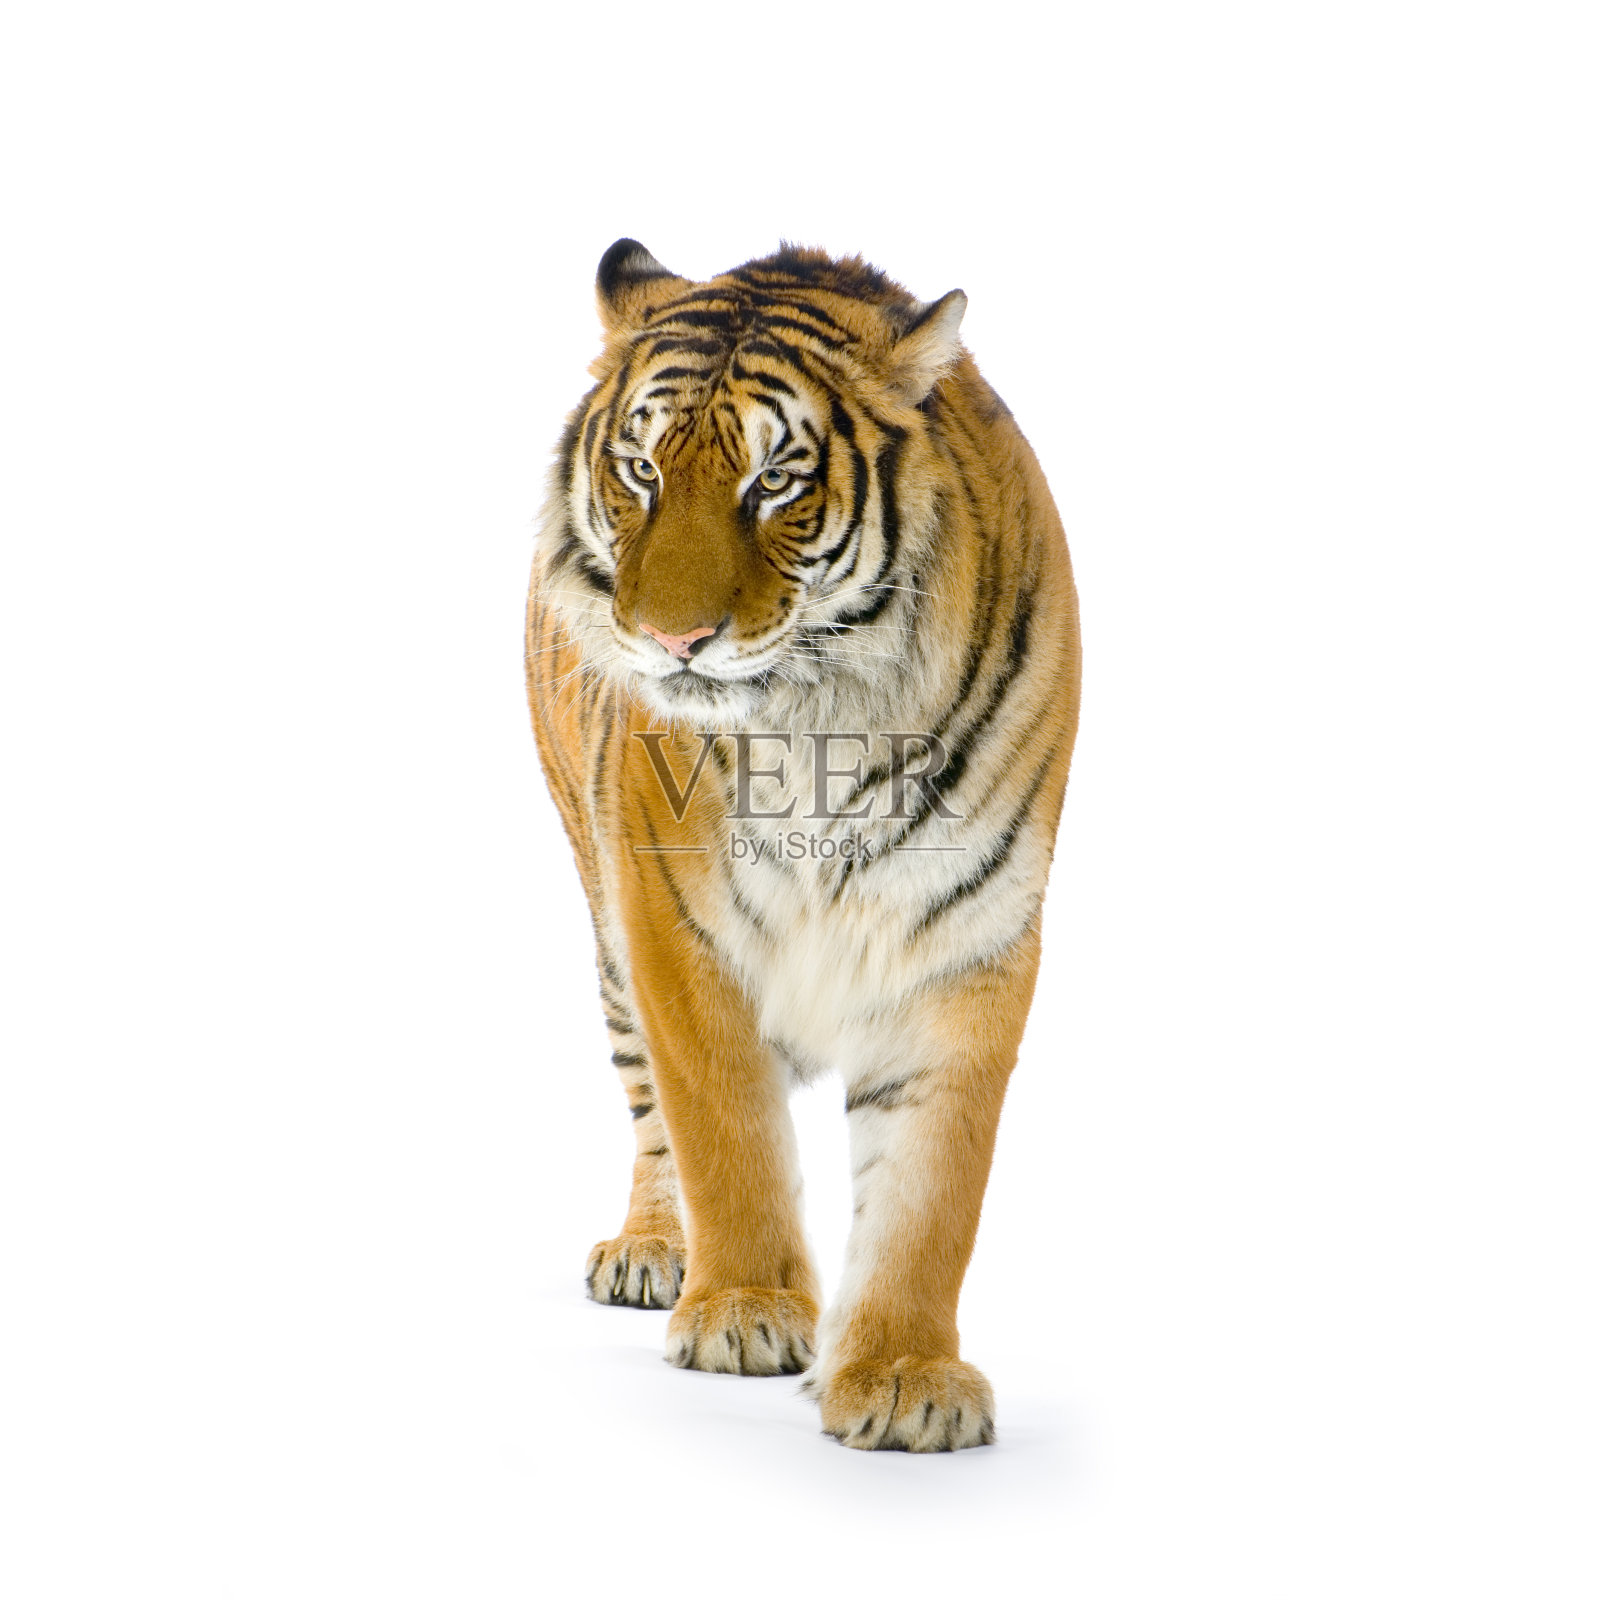 白色背景上橙色和白色条纹的孤独老虎照片摄影图片